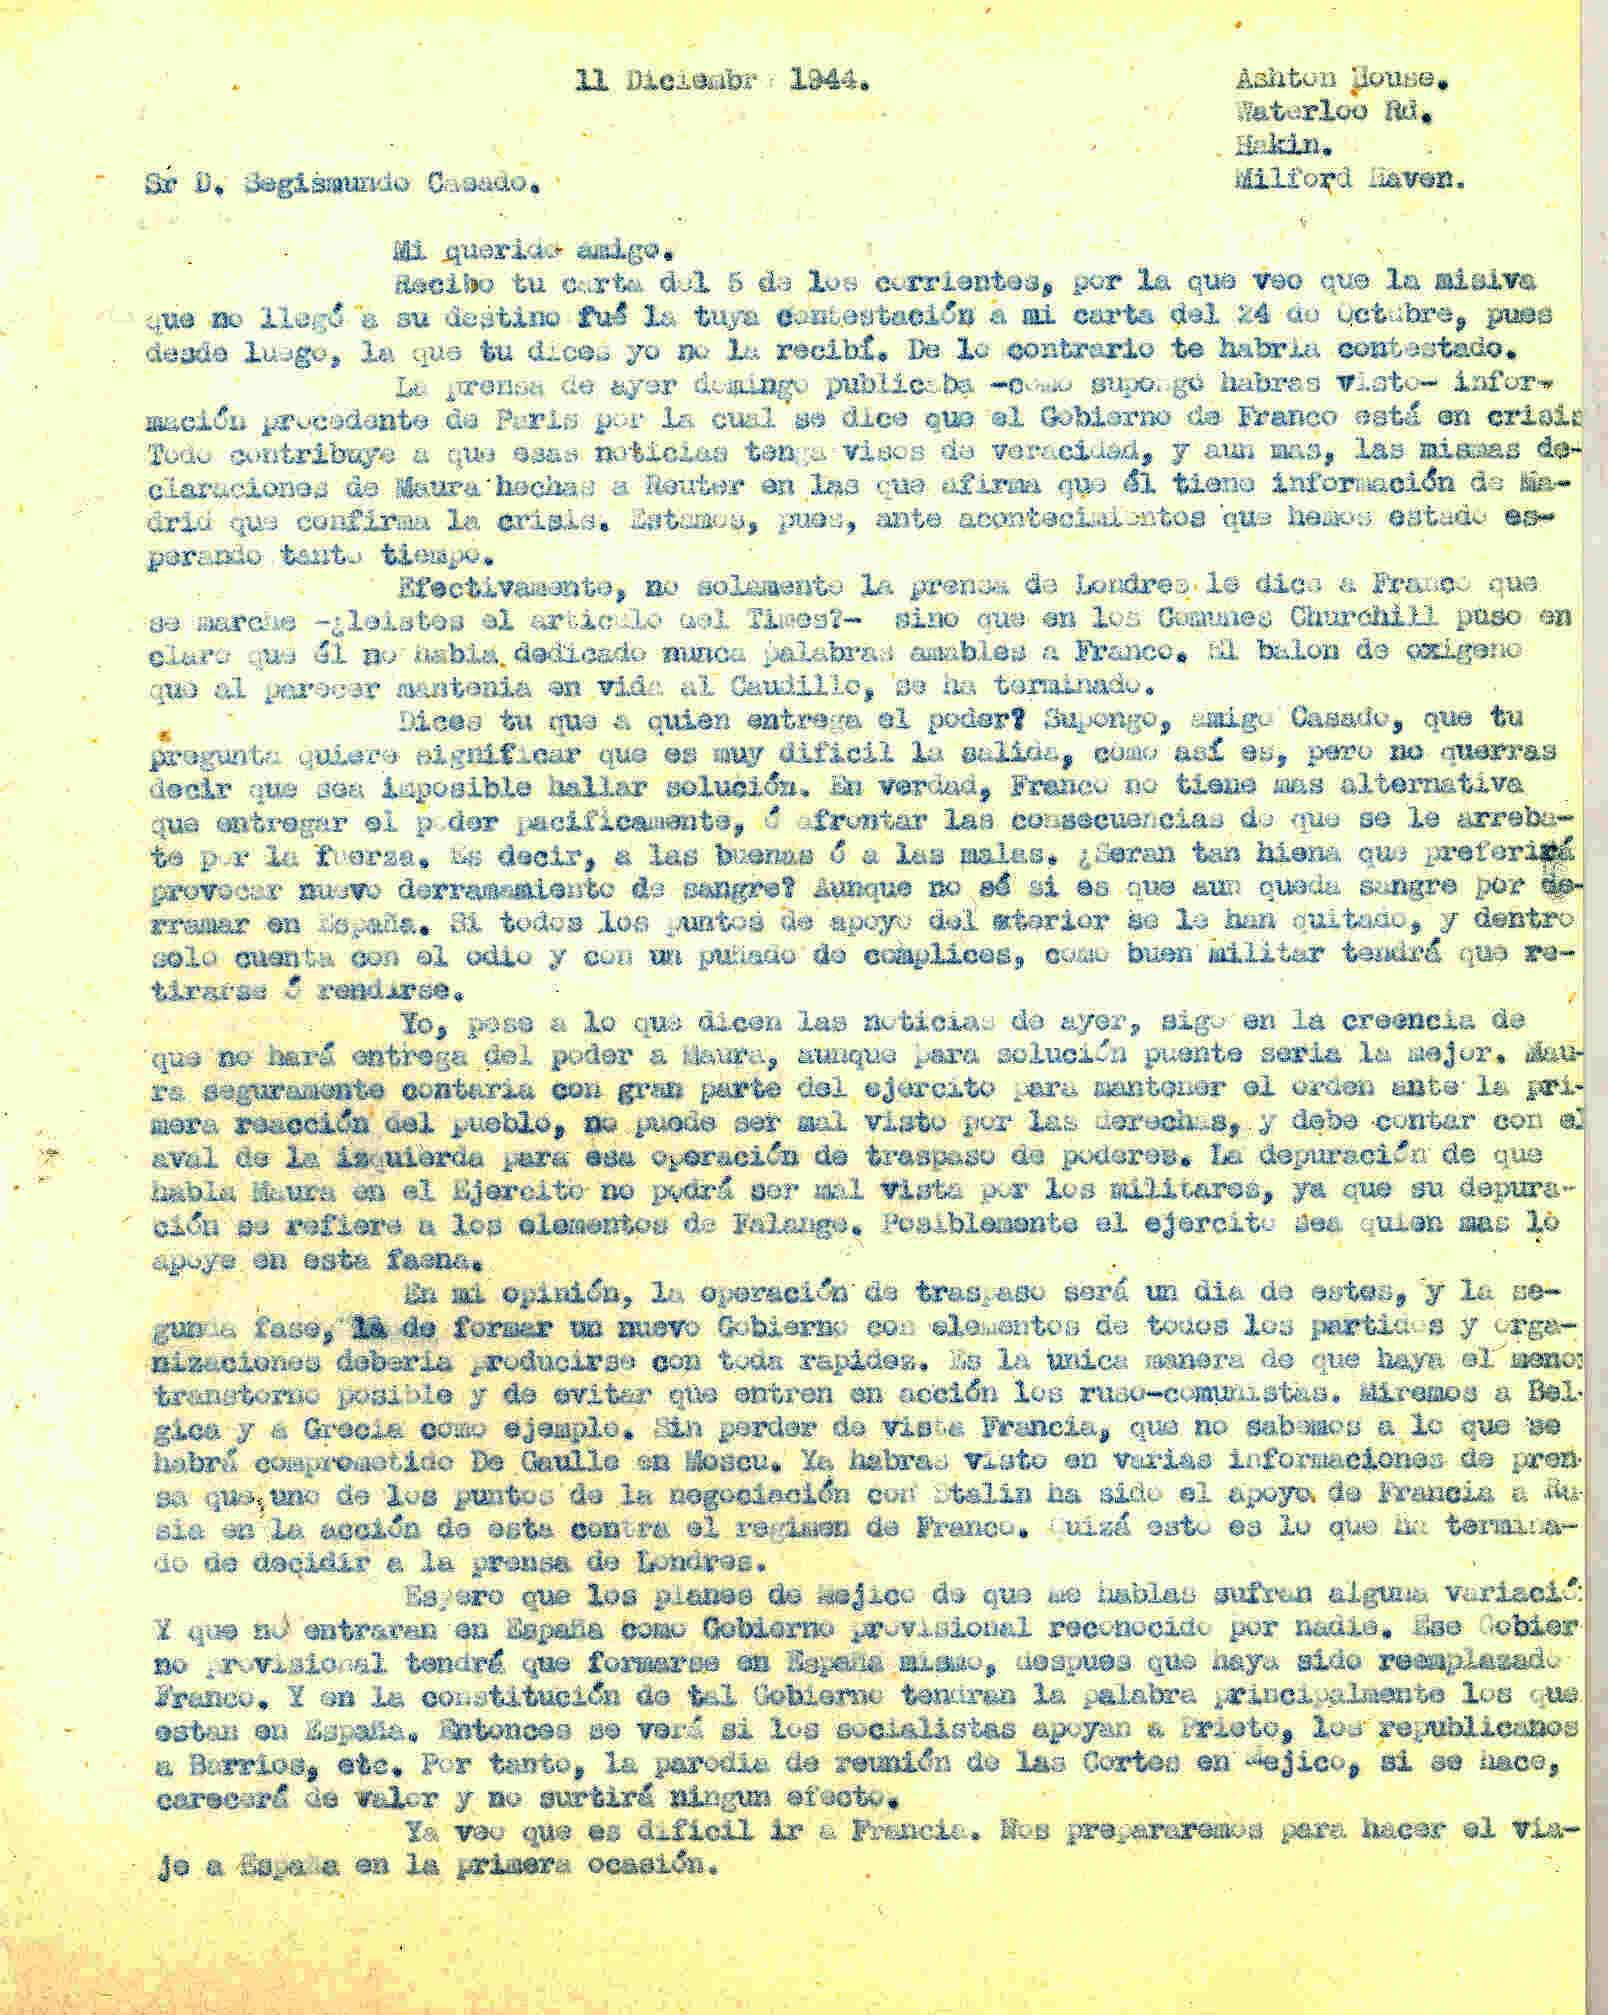 Carta a Segismundo Casado hablando de las publicaciones en la prensa sobre la crisis del gobierno de Franco.